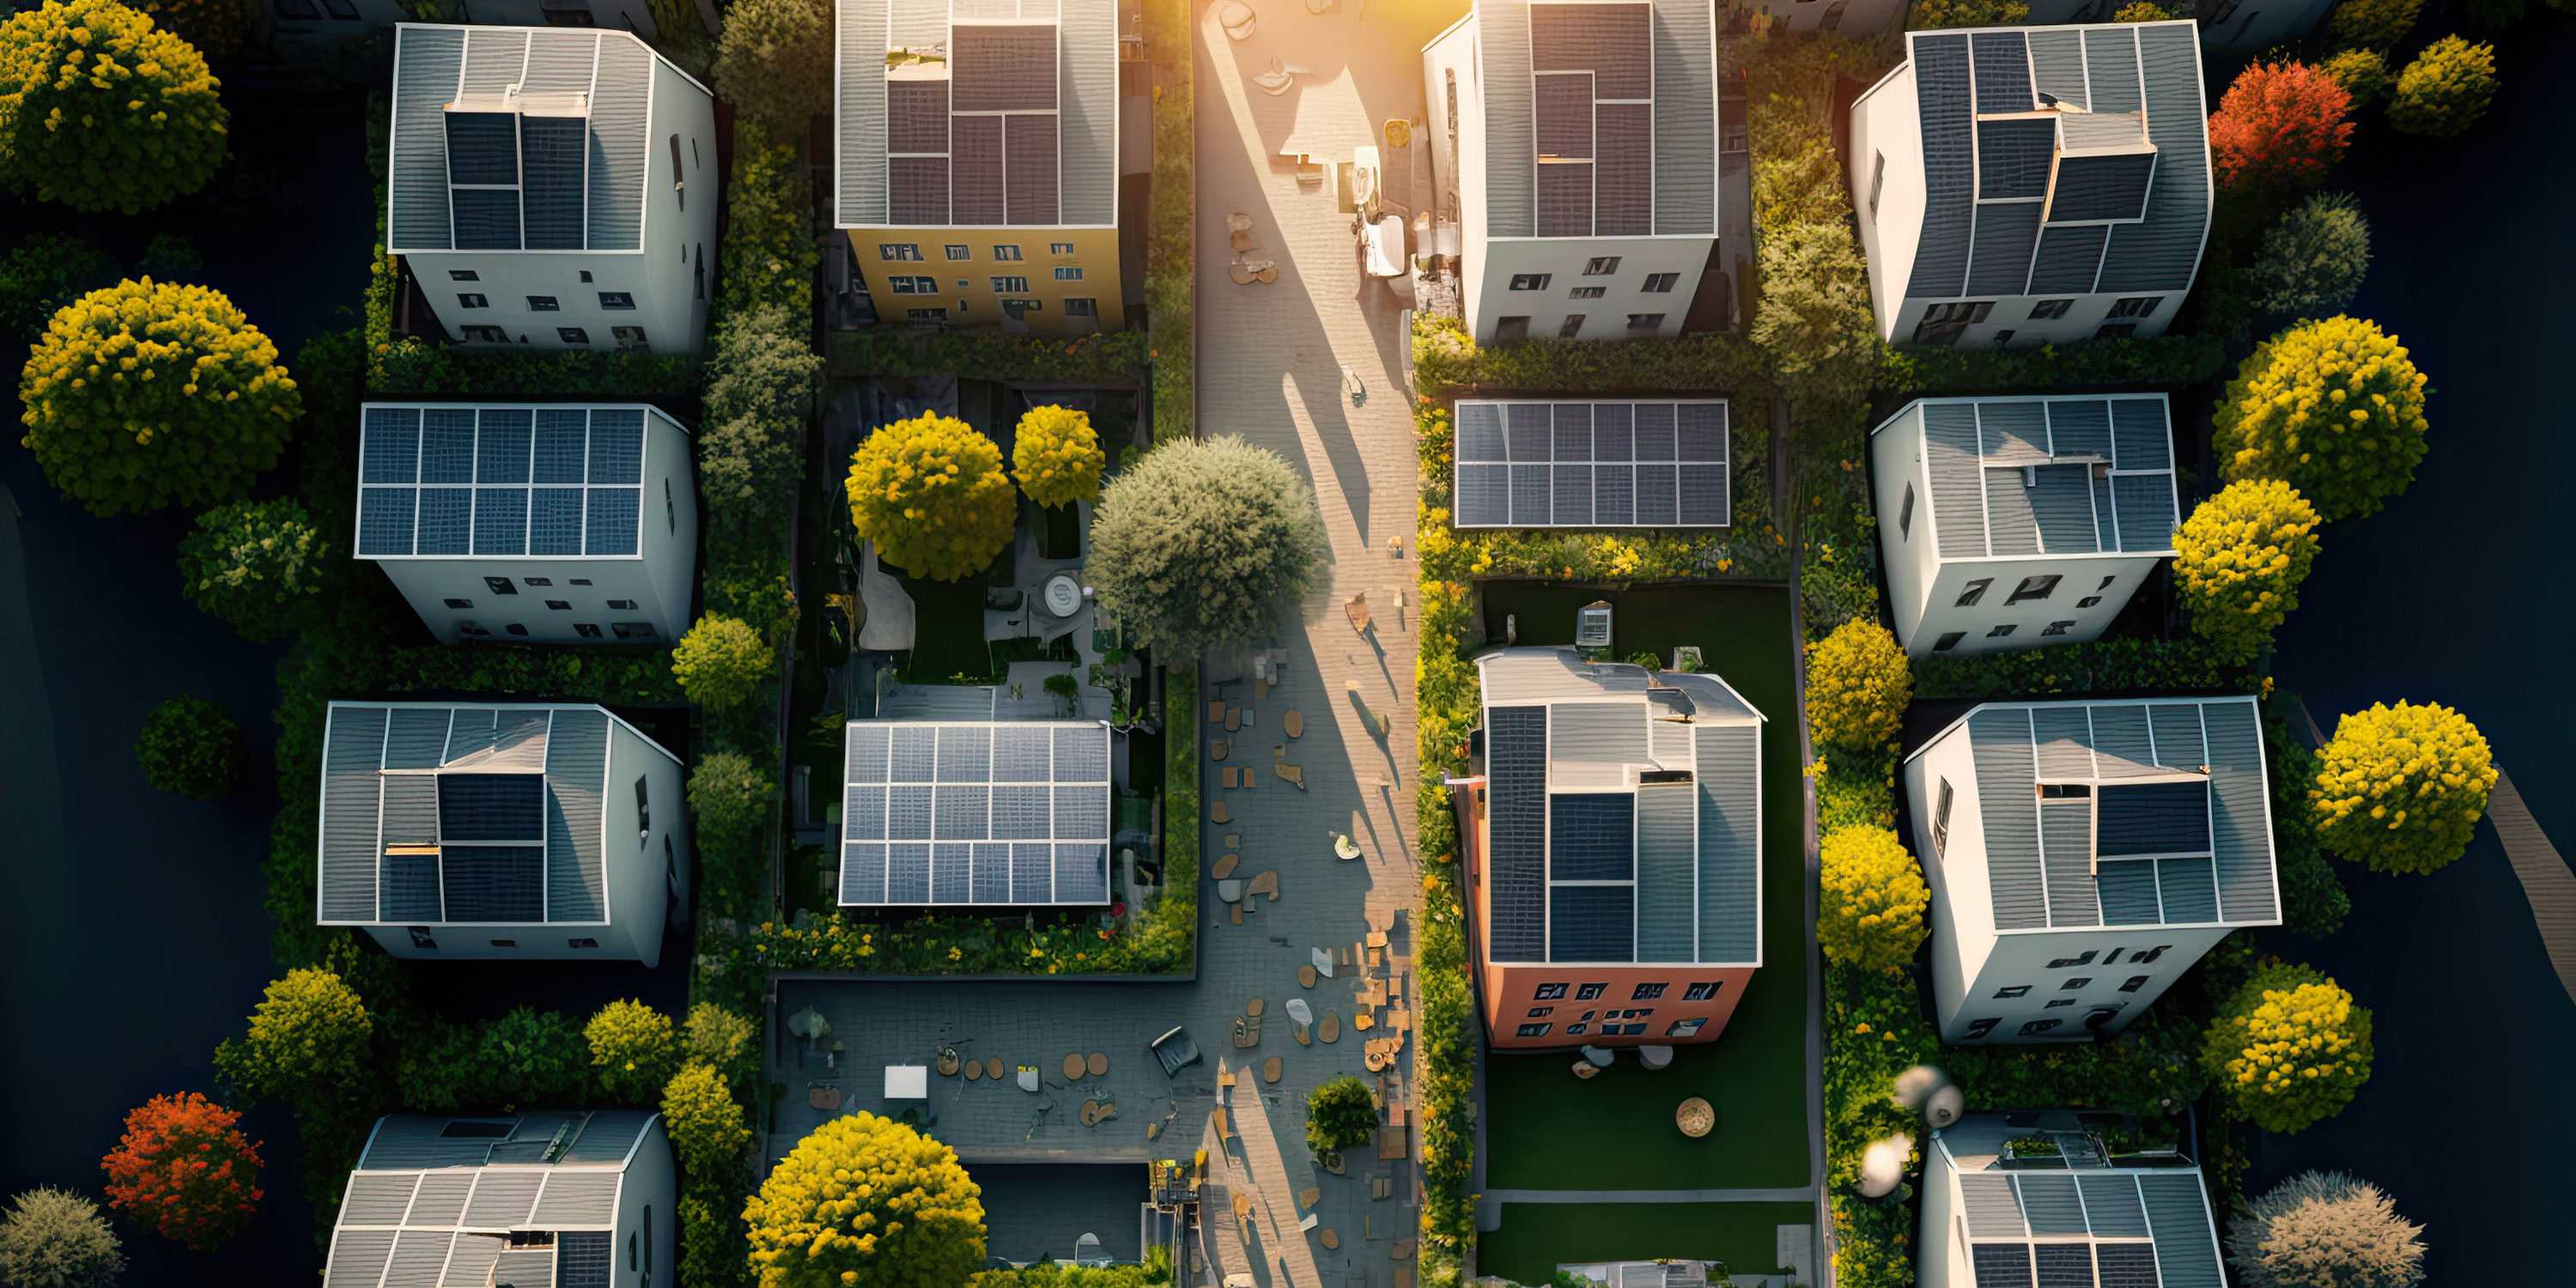 Häusersiedlung aus der Vogelperspektive, auf den Dächern der Häuser sind Solarpanels.